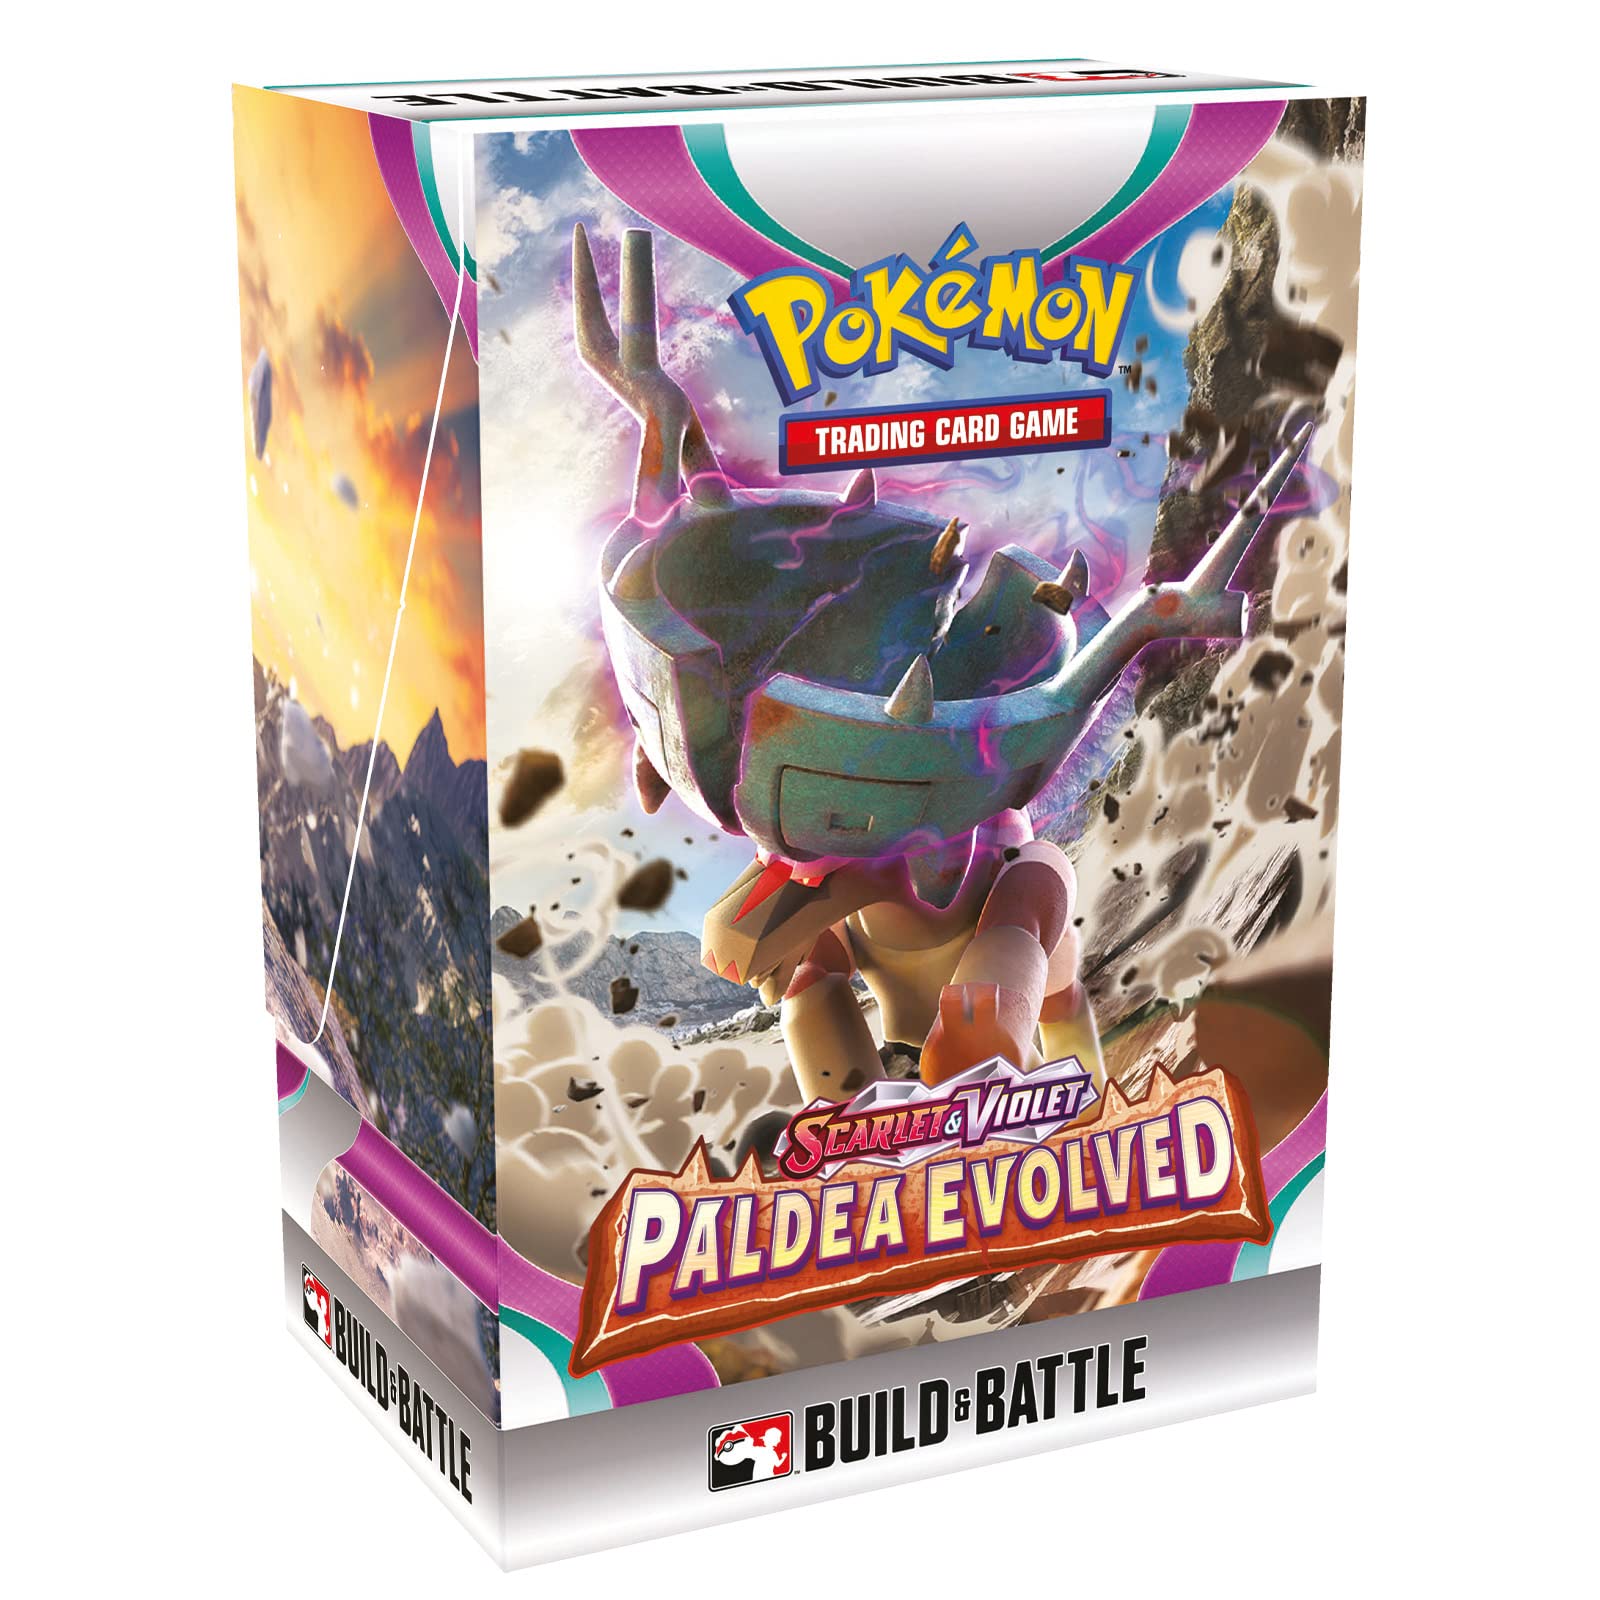 Pokemon Scarlet & Violet Paldea Evolved Build & Battle Stadium